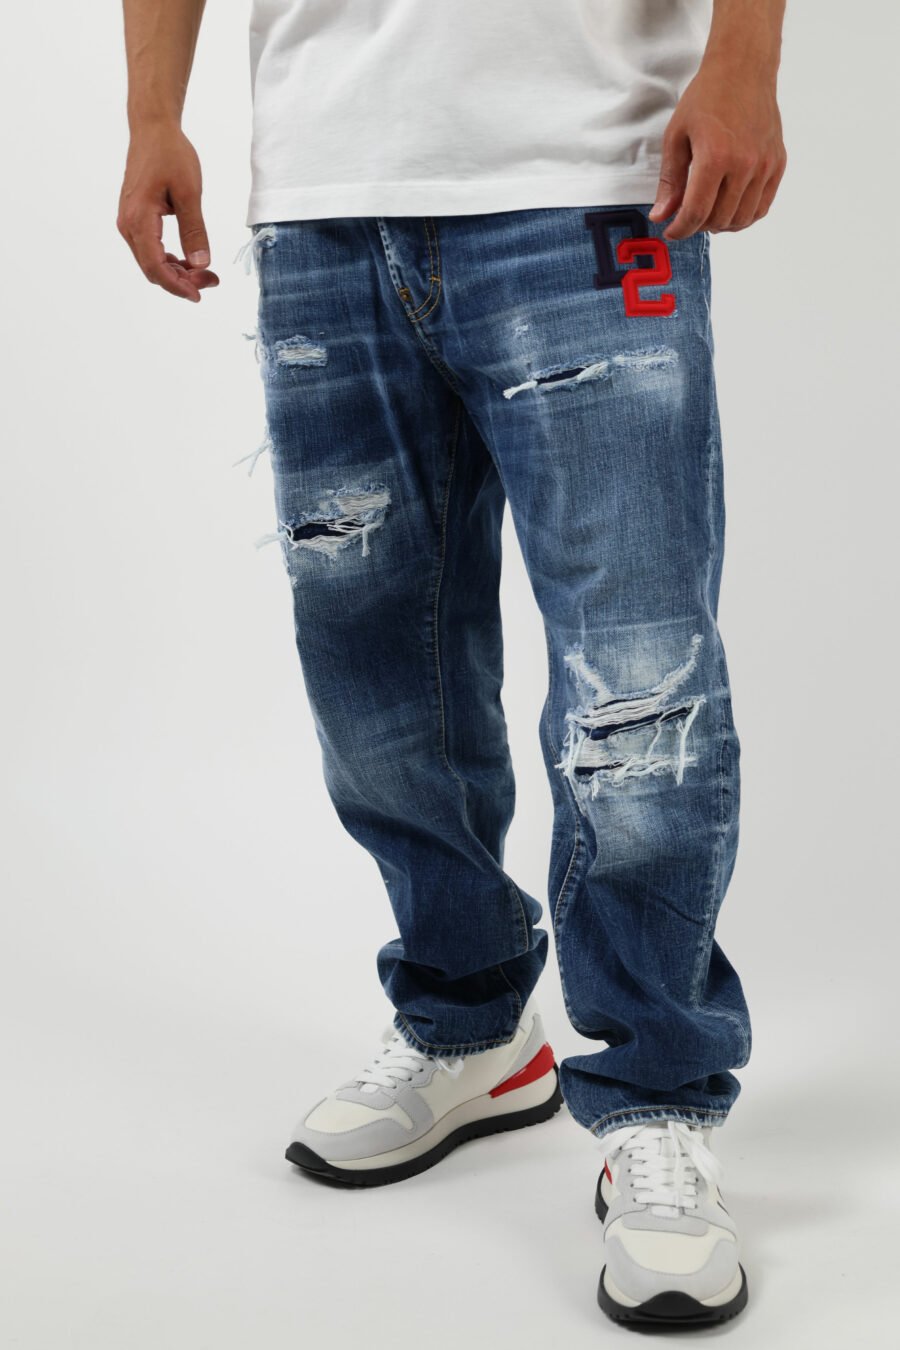 Pantalón vaquero azul "bro jeans" con logo "d2" - 8054148338572 2 1